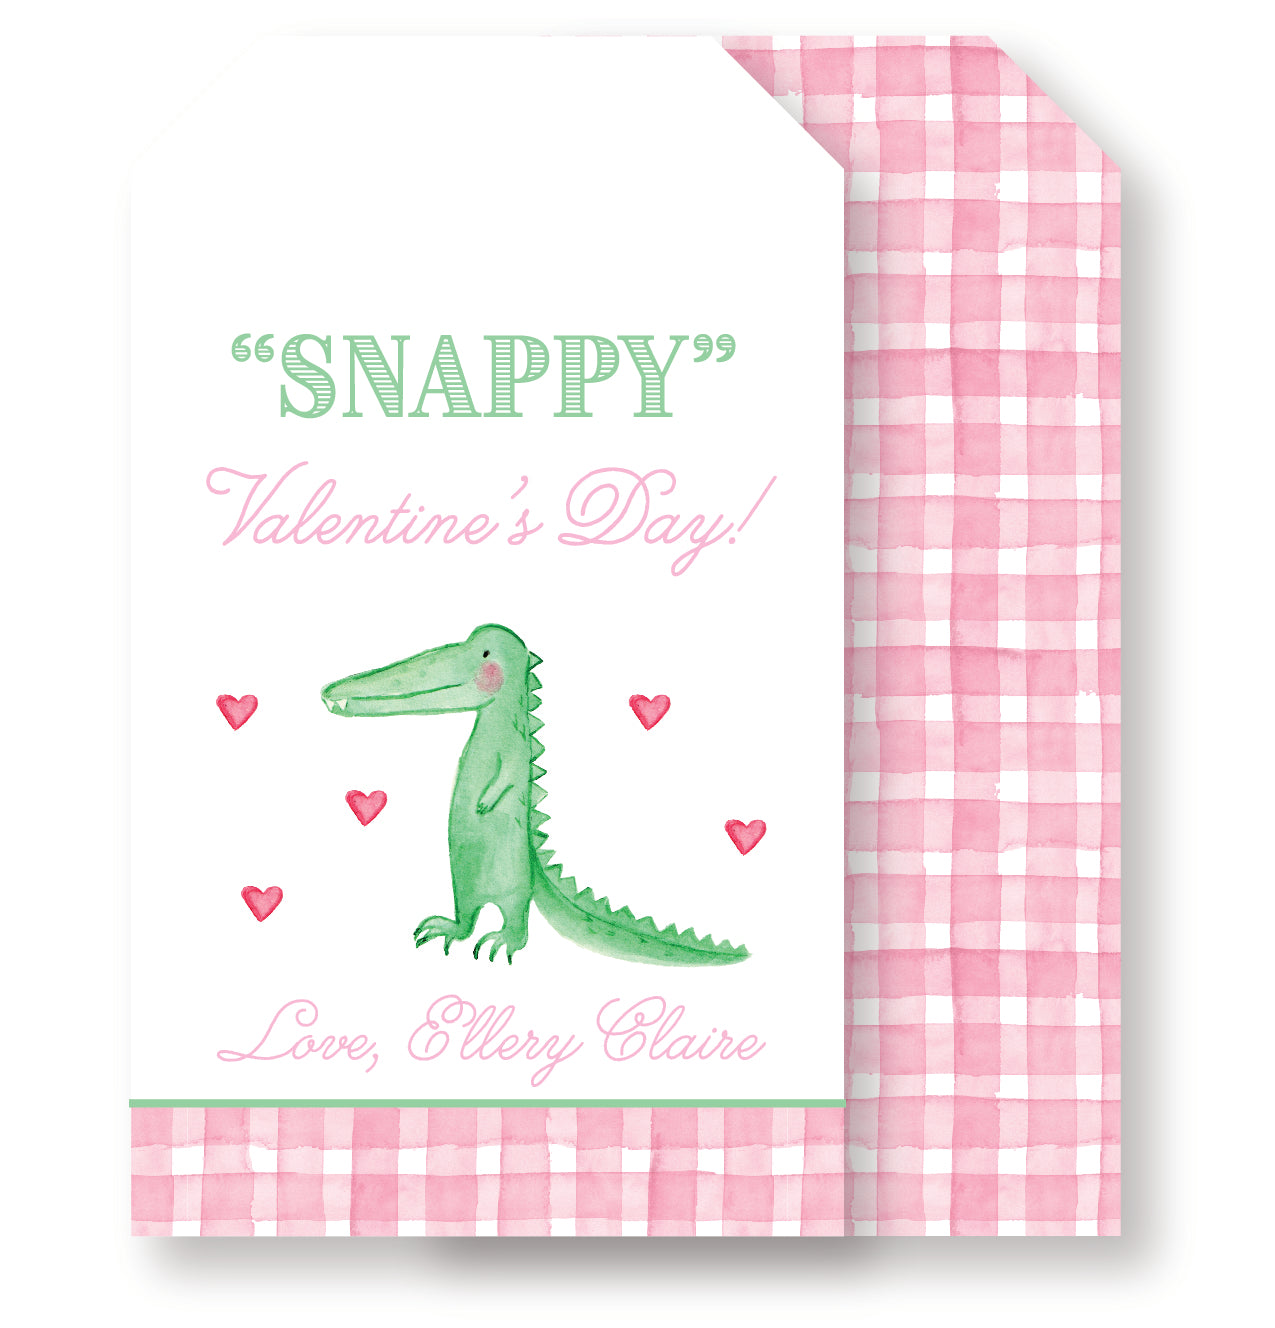 Snappy Valentine's Day